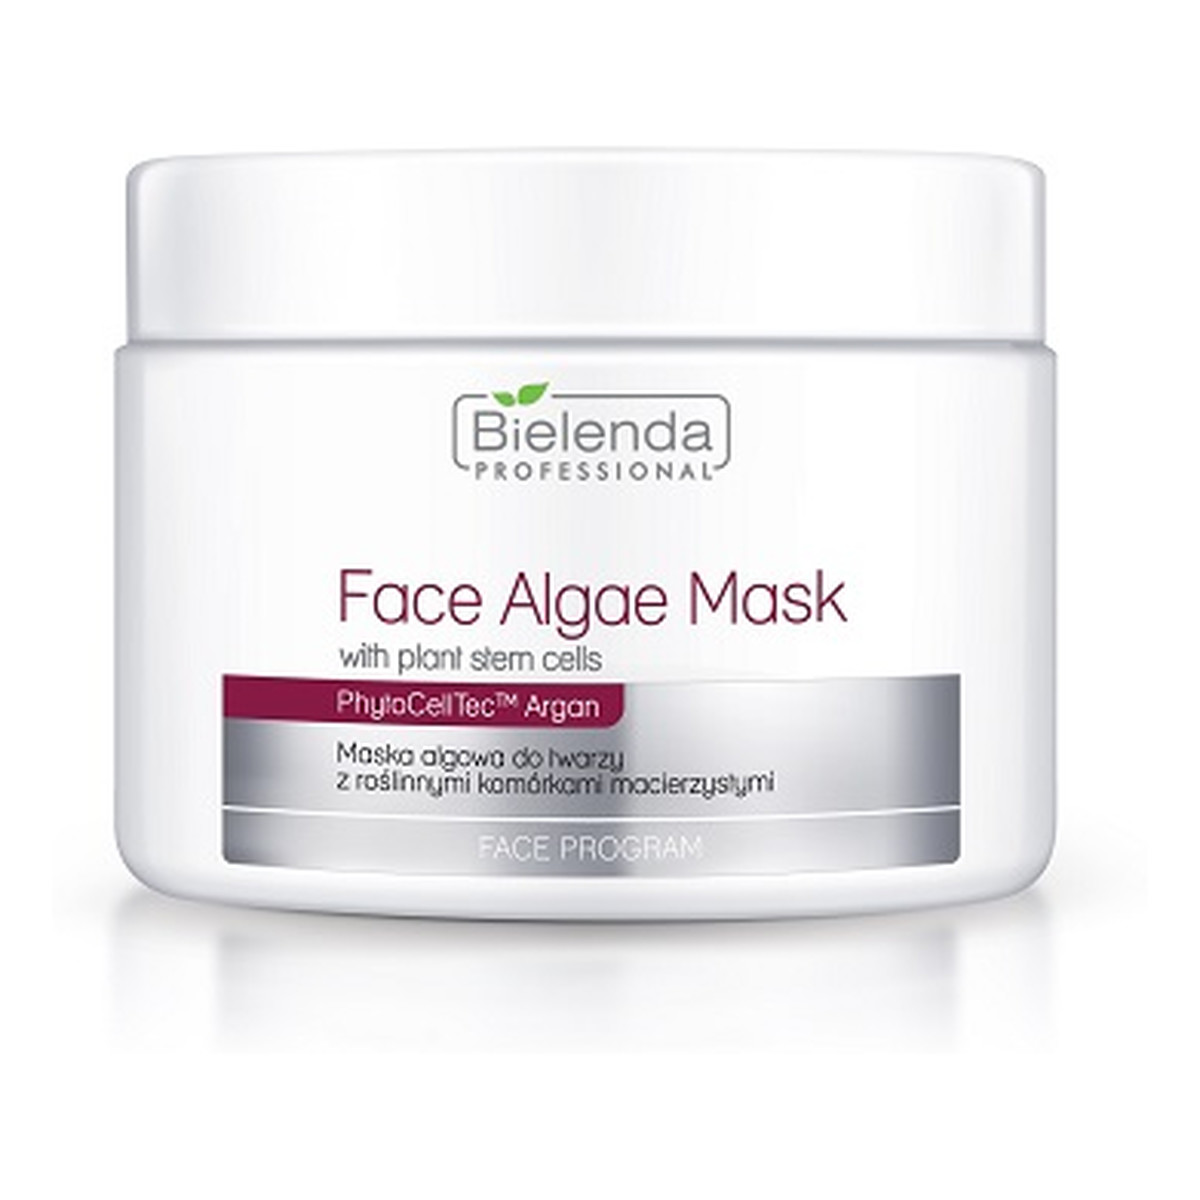 Bielenda Professional Phytocelltec™ Argan Face Algae Mask Maska Algowa Z Komórkami Macierzystymi Cera Pozbawiona Elastyczności i Jędrności 190g